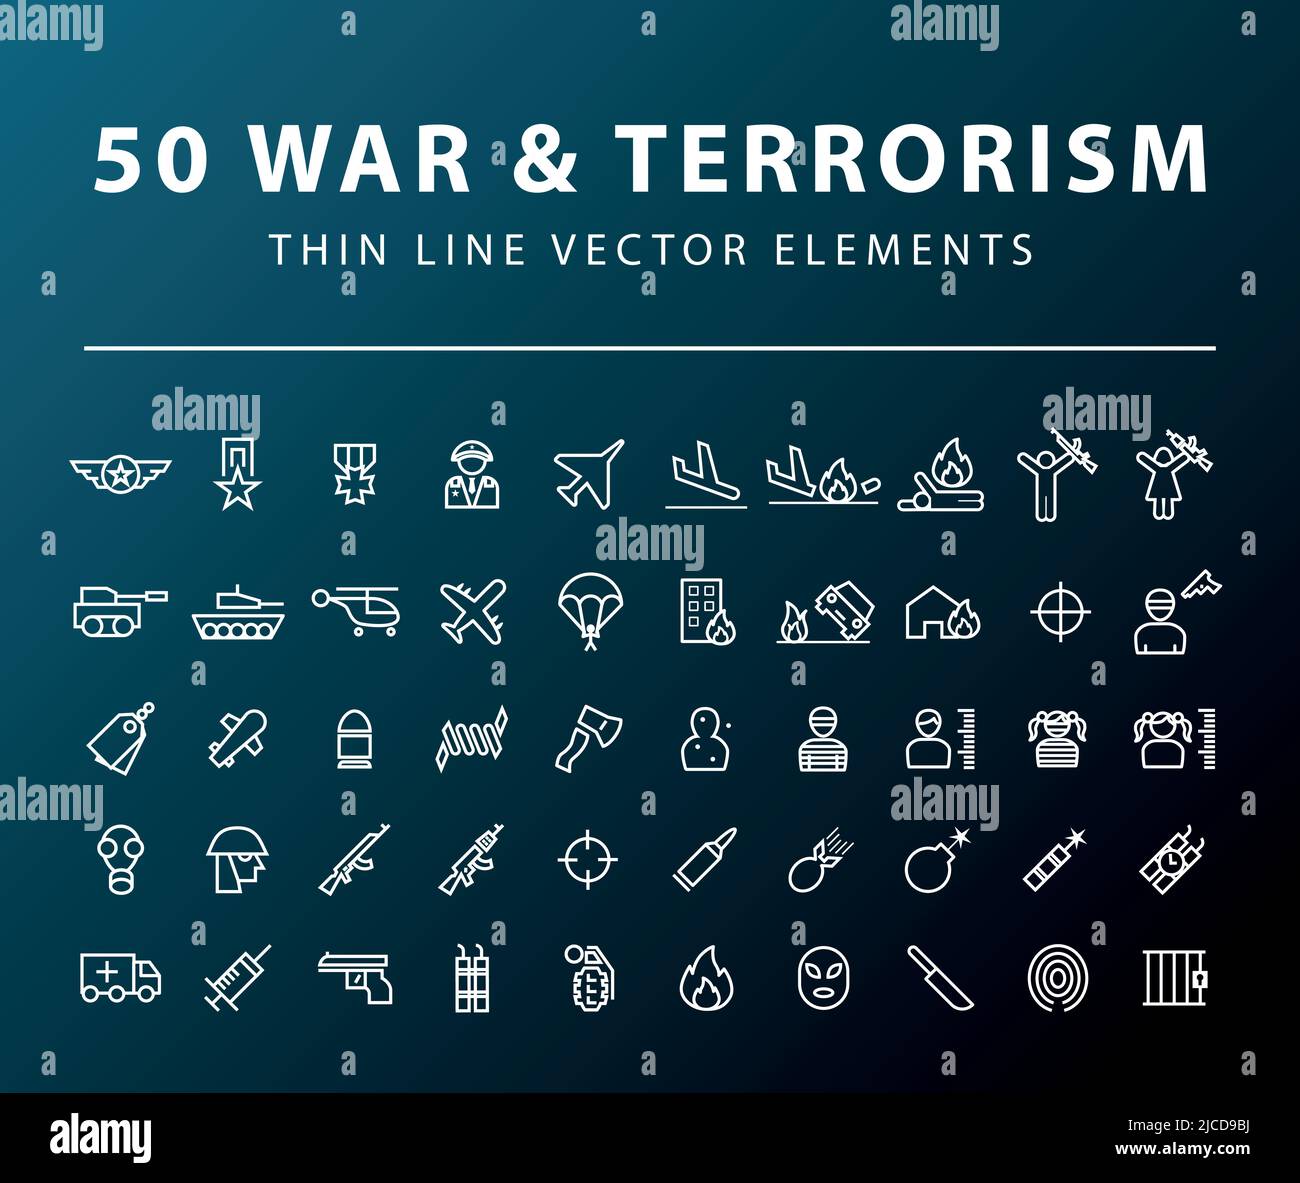 war terrorism vector Stock Vector